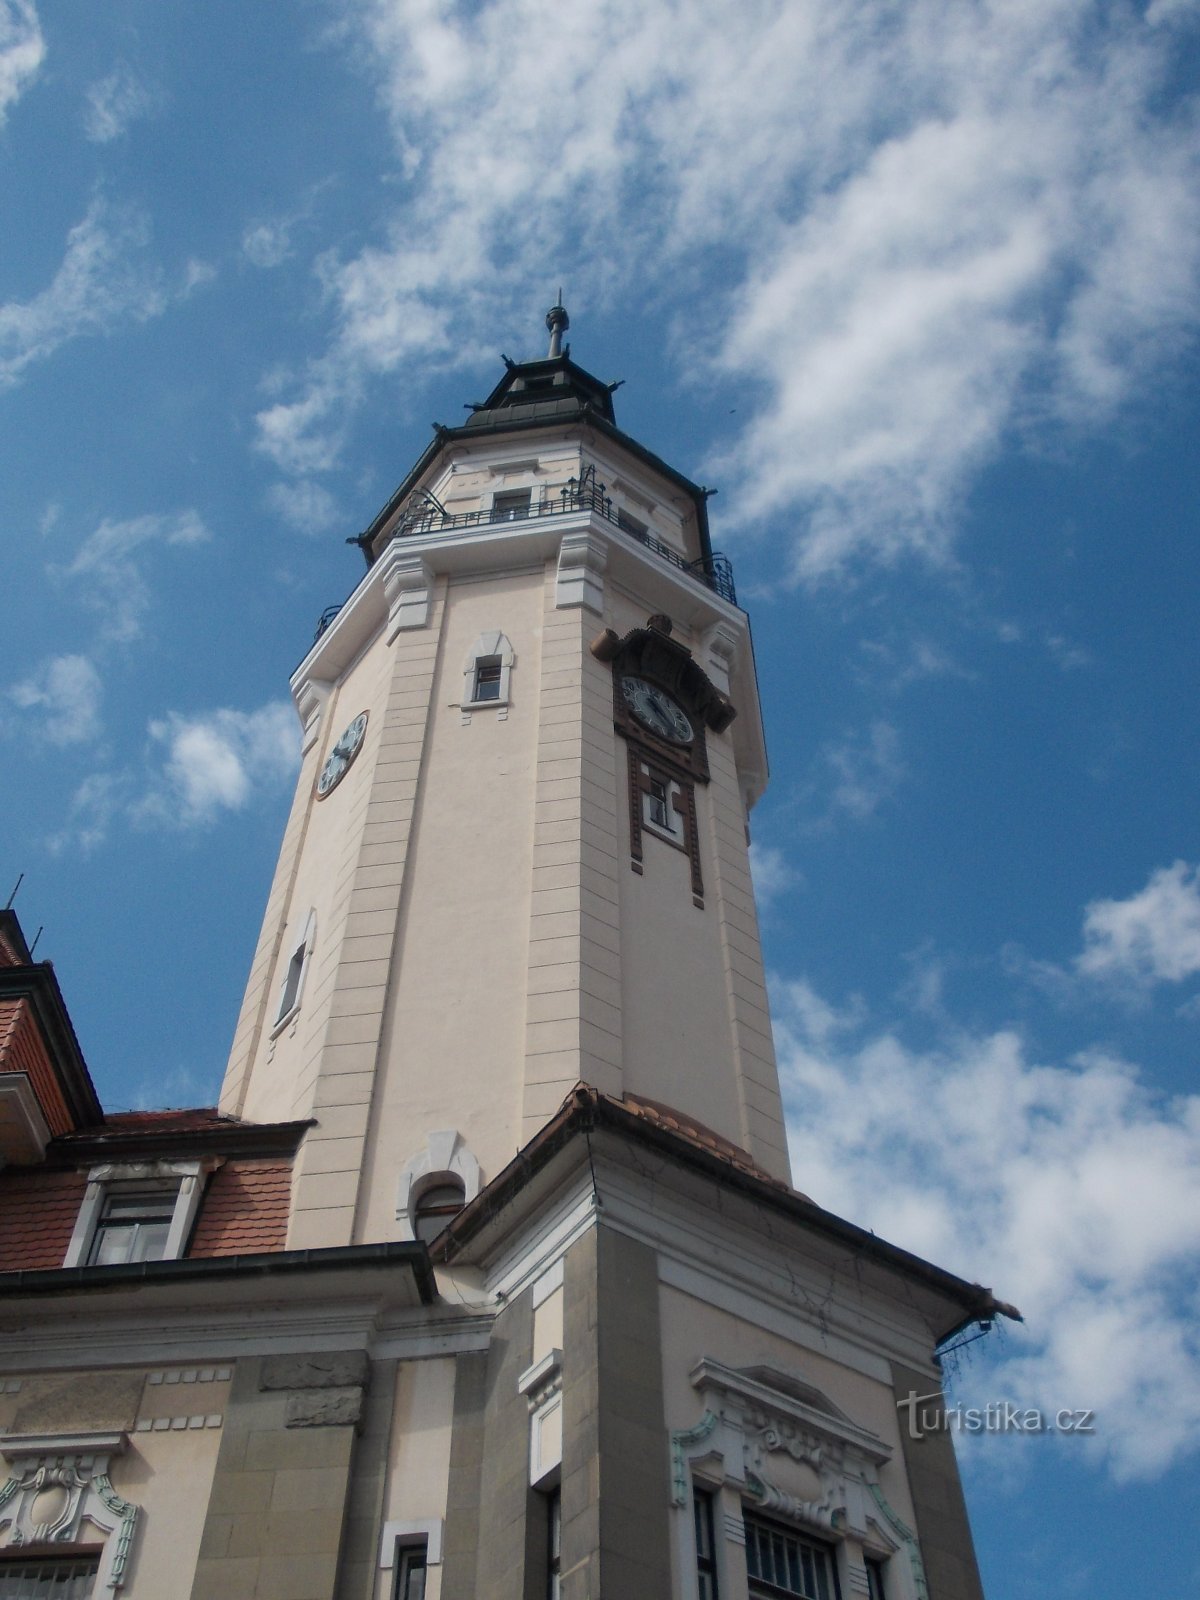 stolp mestne hiše je visok 63 metrov